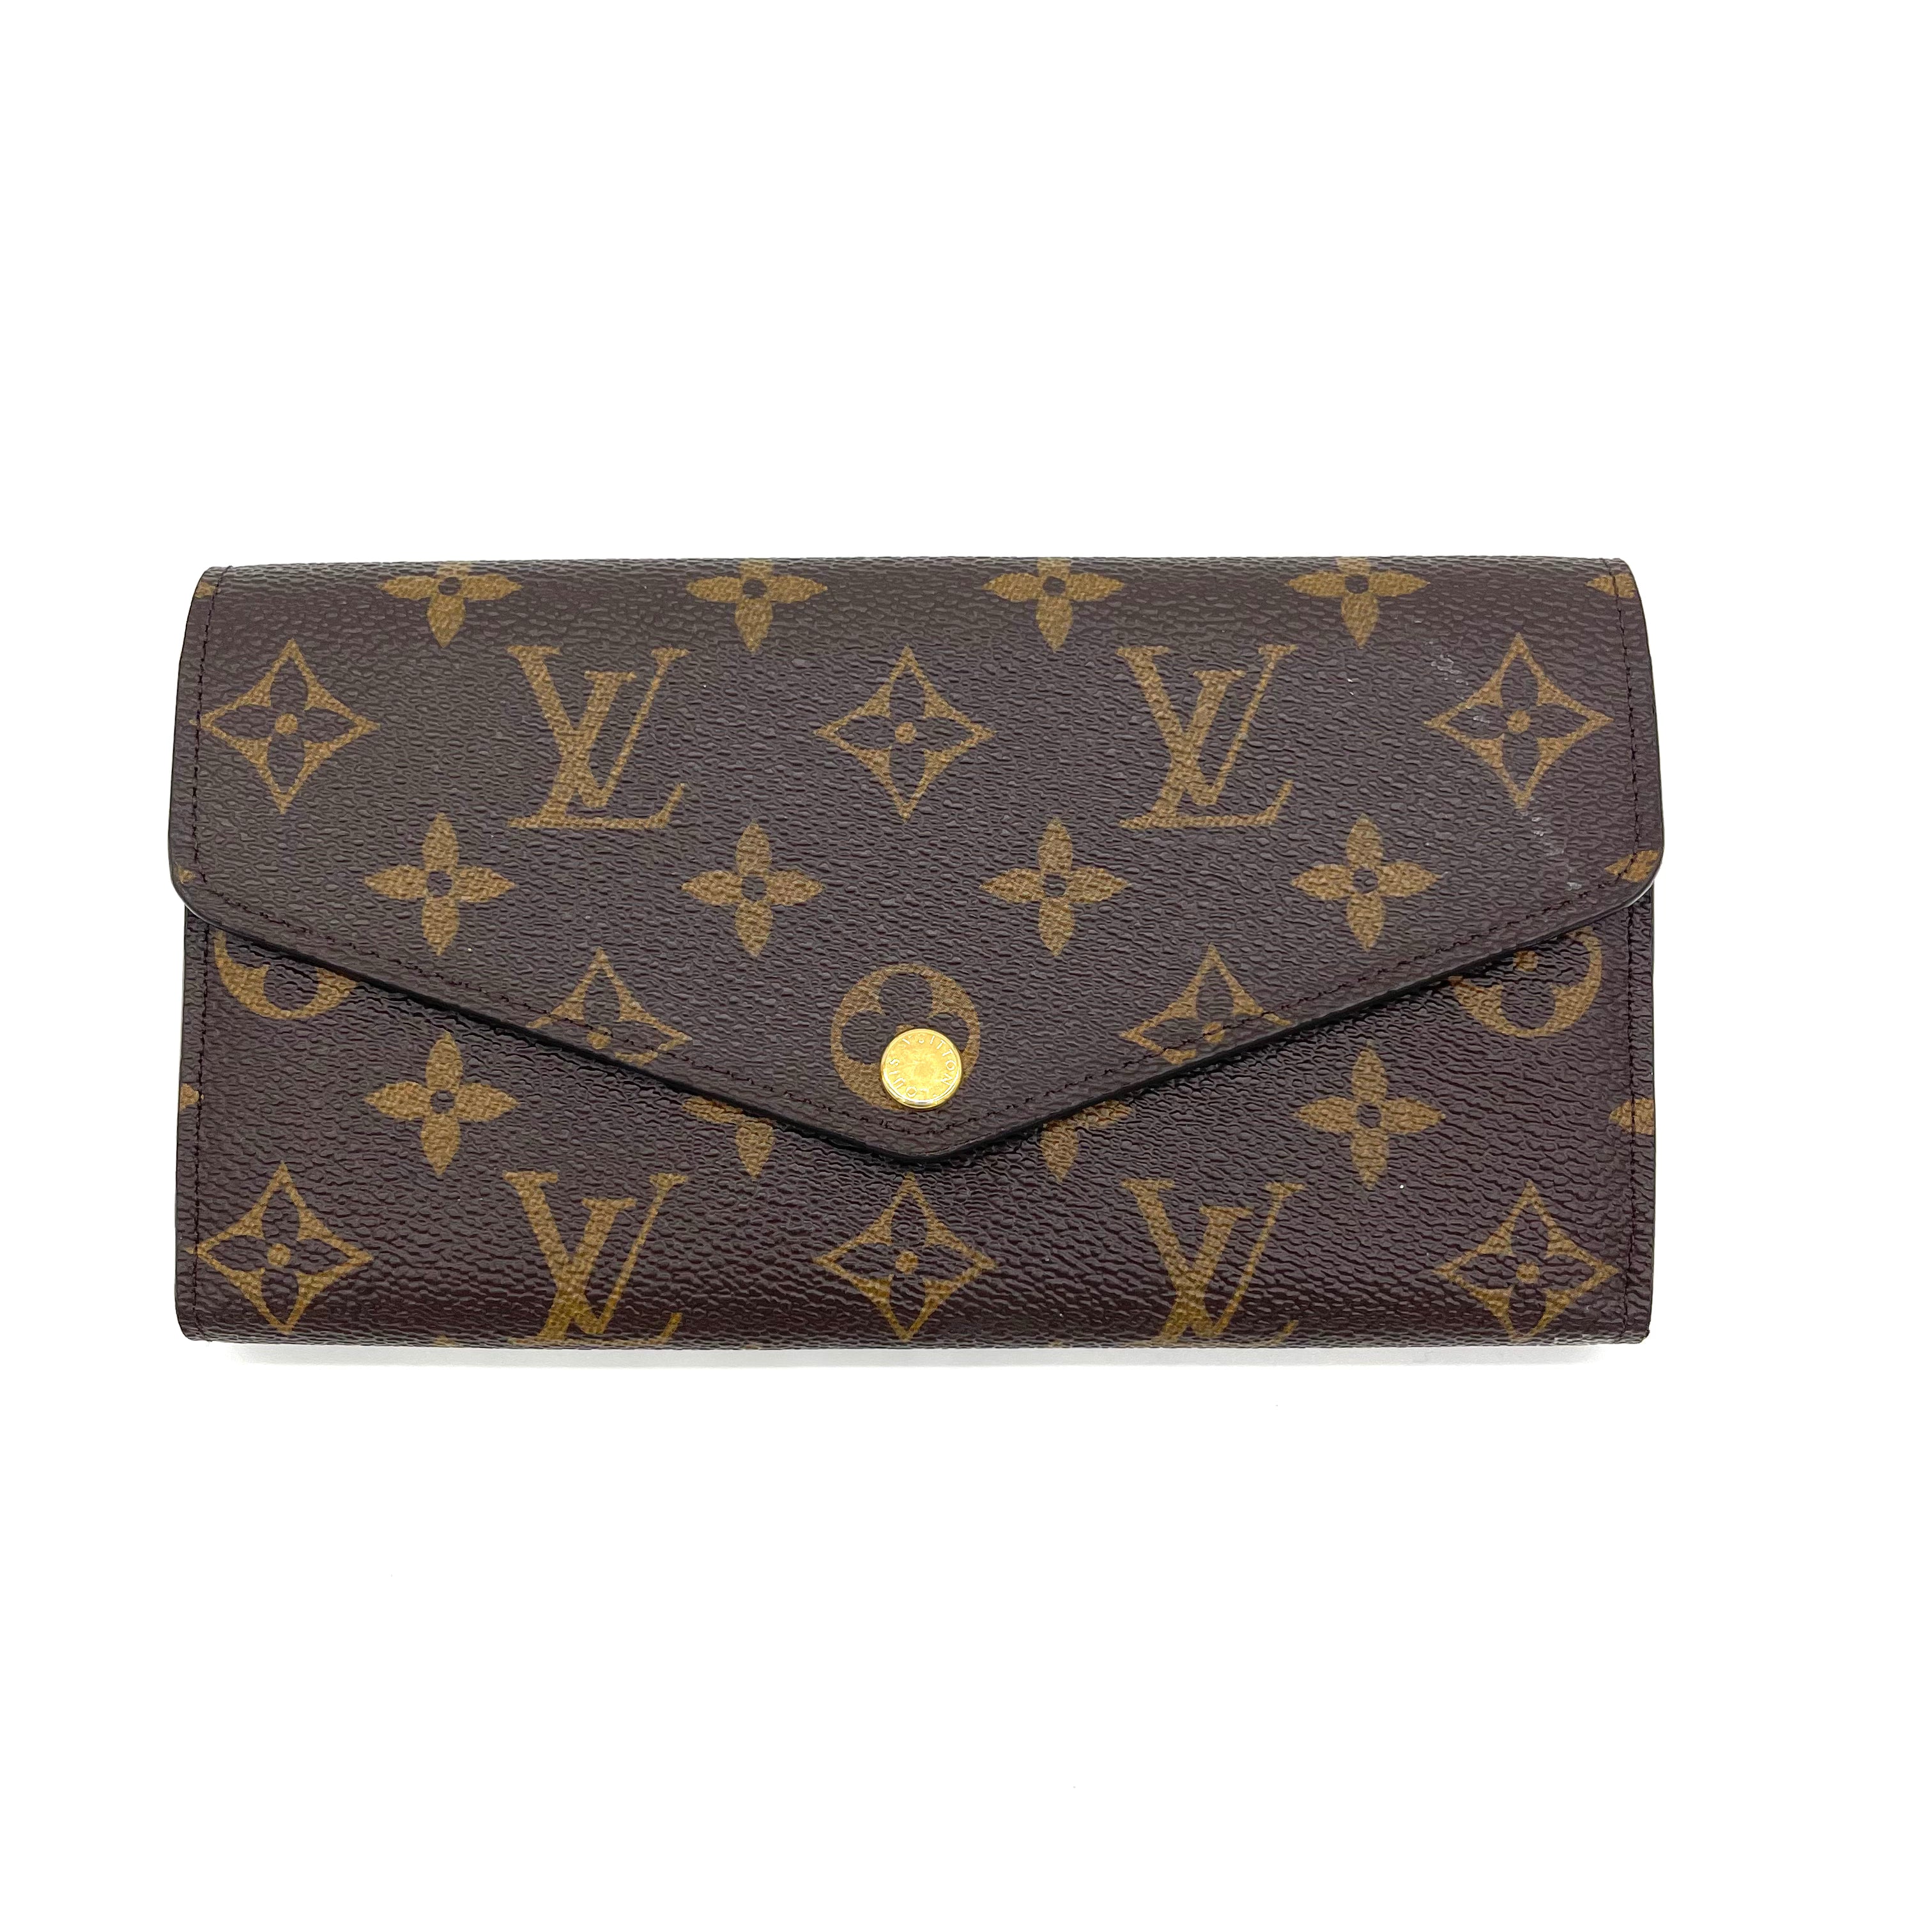 Louis Vuitton - Sarah Wallet - Monogram - Brown - Women - Luxury